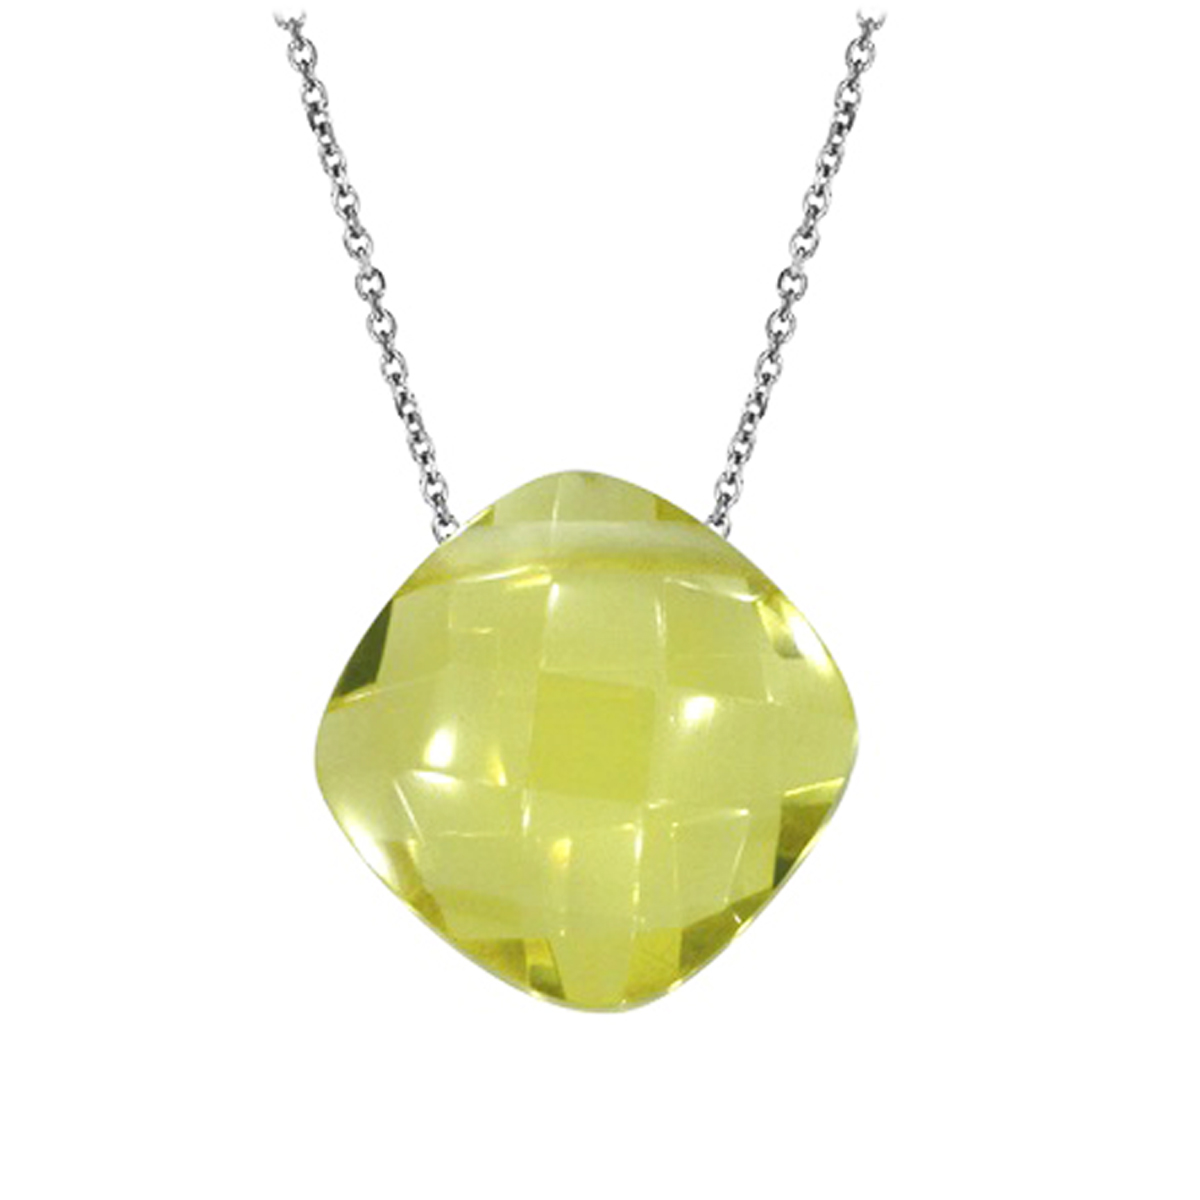 Collier Argent \'Meghan\' quartz jaune argenté (rhodié) - 10x10 mm - [Q6767]